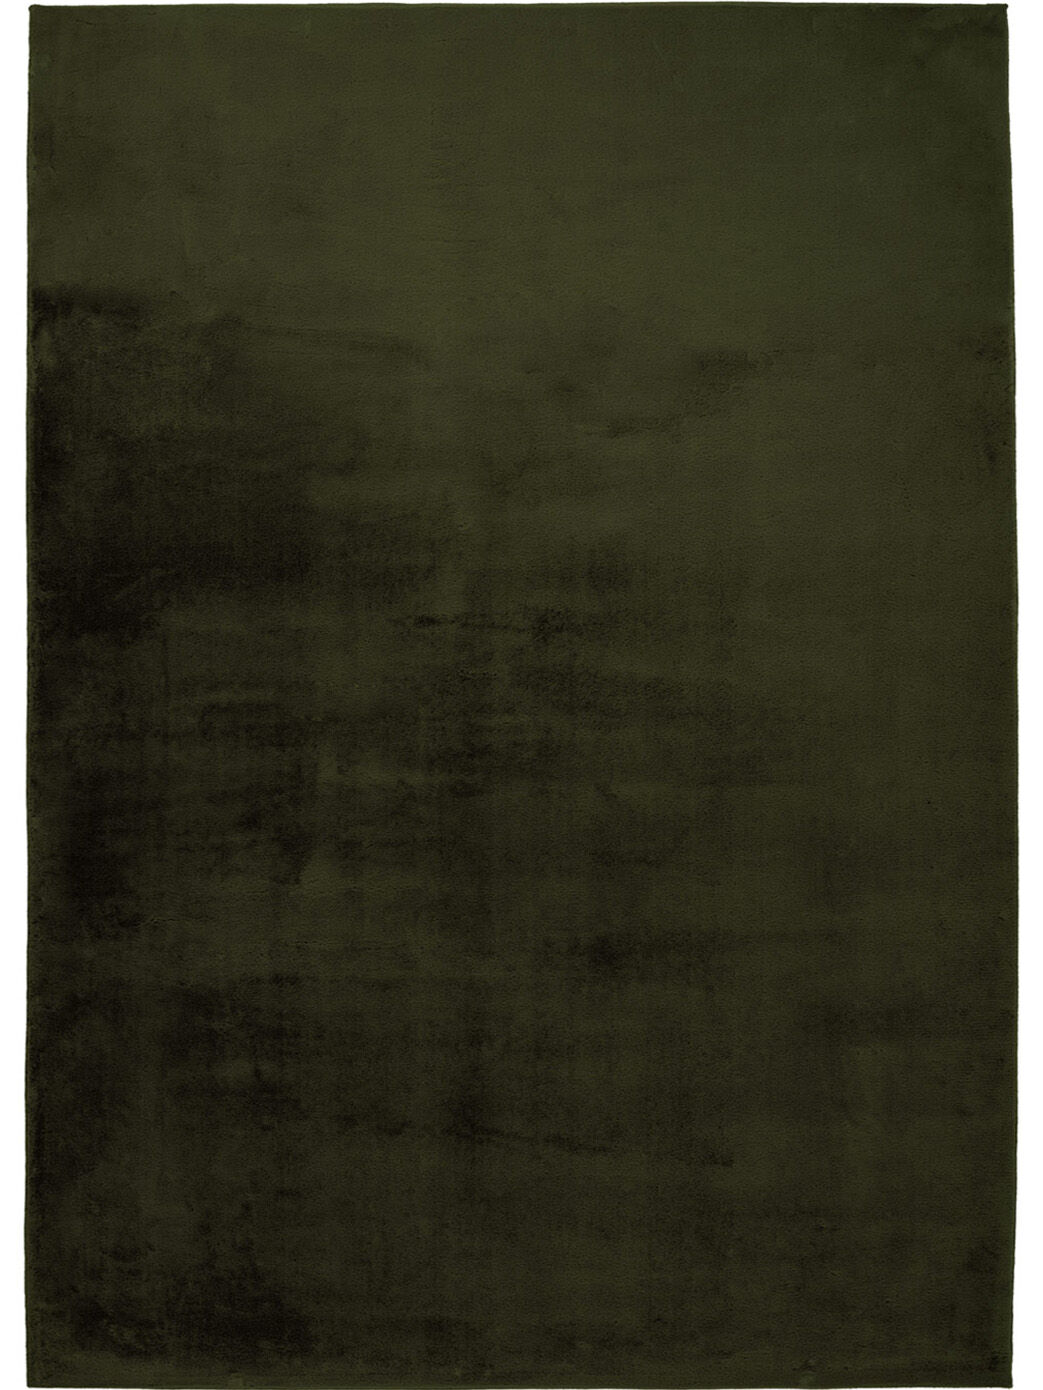 Flauschiger Teppich Mona Gruen 160x230 1